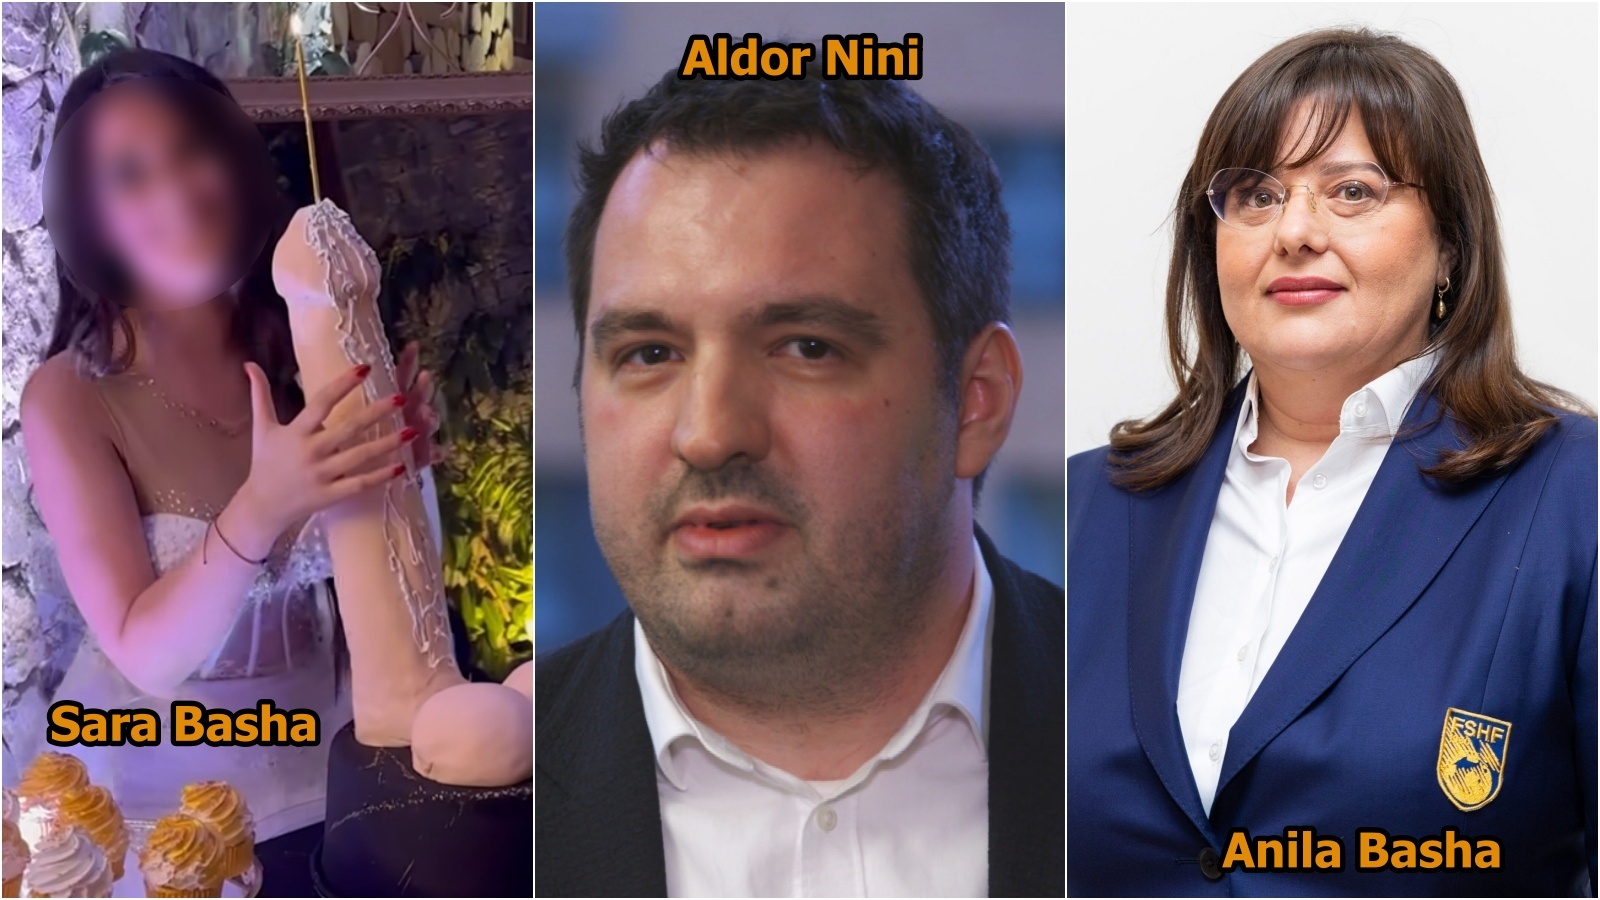 Bashkëjetues me mbesën e Anila Bashës: Hakmarrje dhe romancë! Pse u arrestua Aldor Nini i “Acromax”?